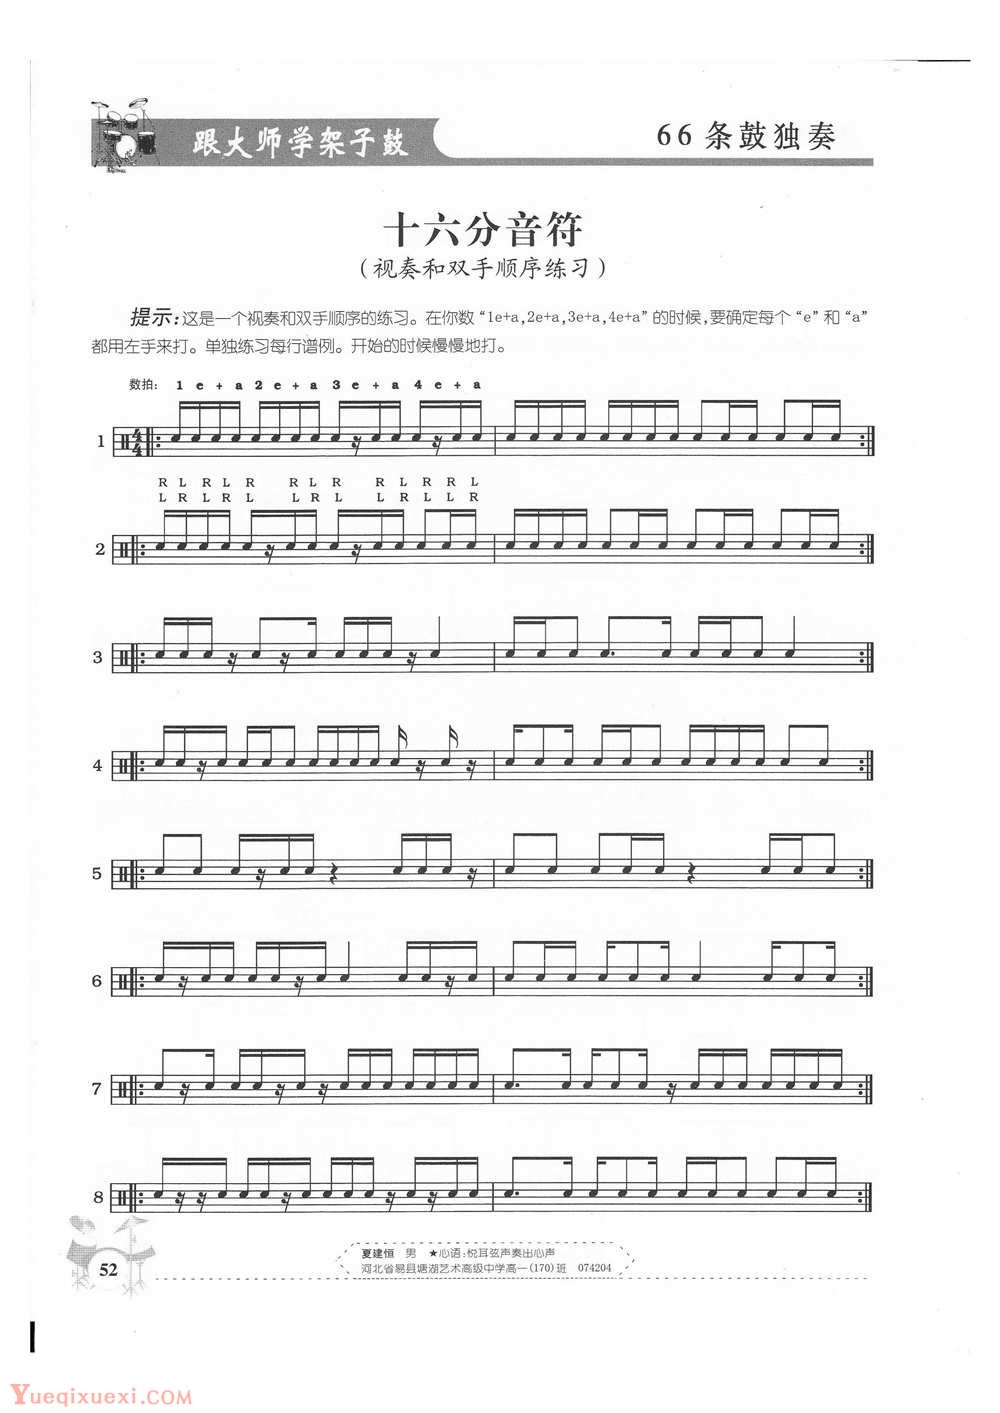 架子鼓基础练习 十六分音符(视奏和双手顺序练习)